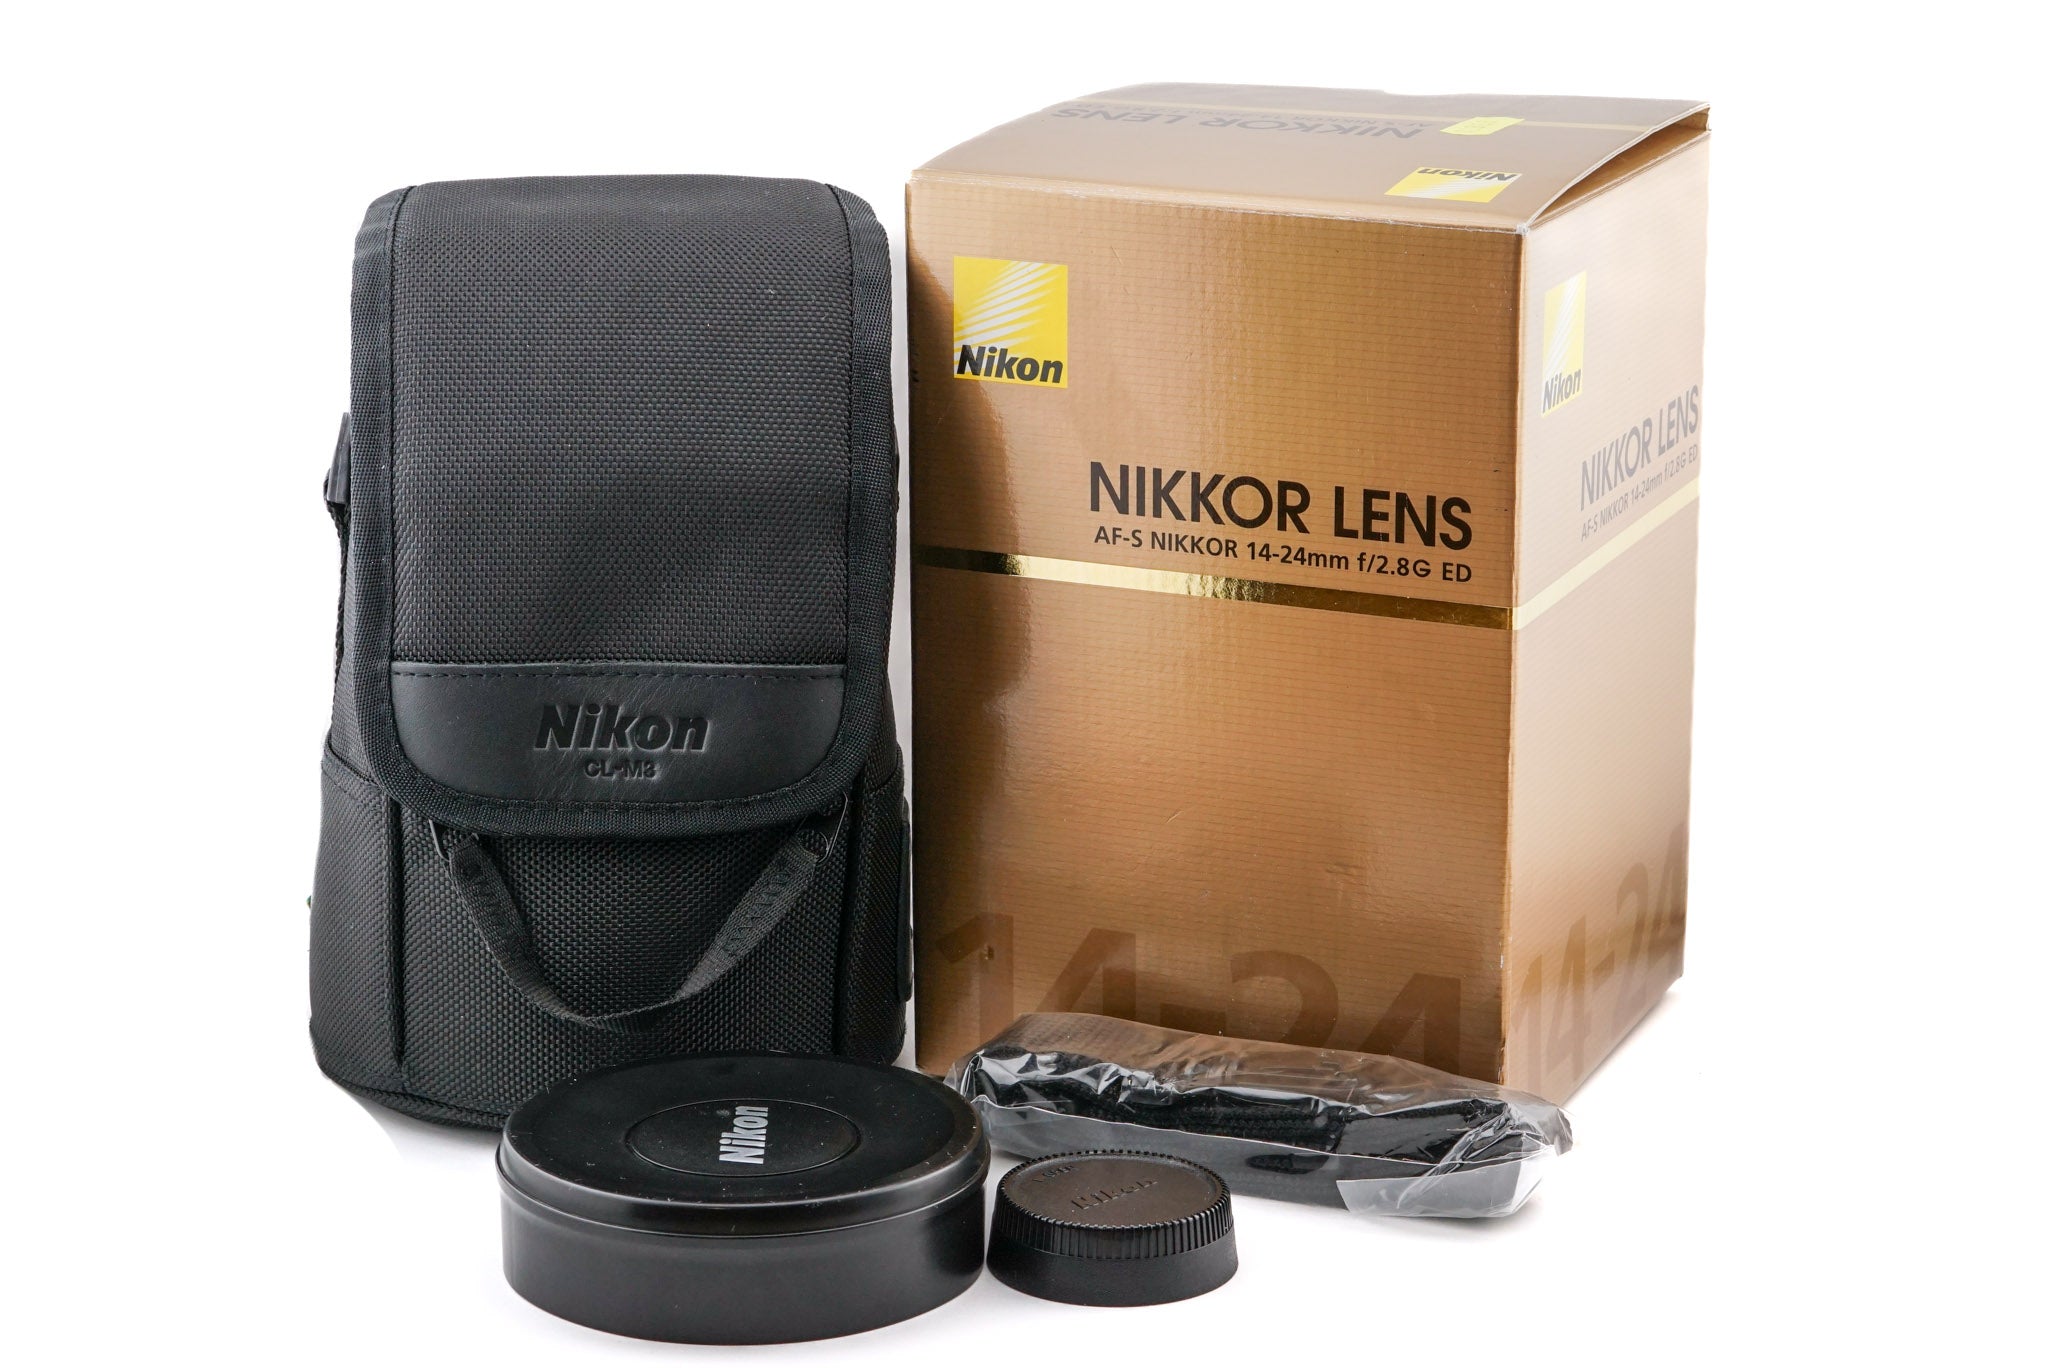 Nikon ニコンAF-S NIKKOR 14-24mm f/2.8G ED - レンズ(ズーム)